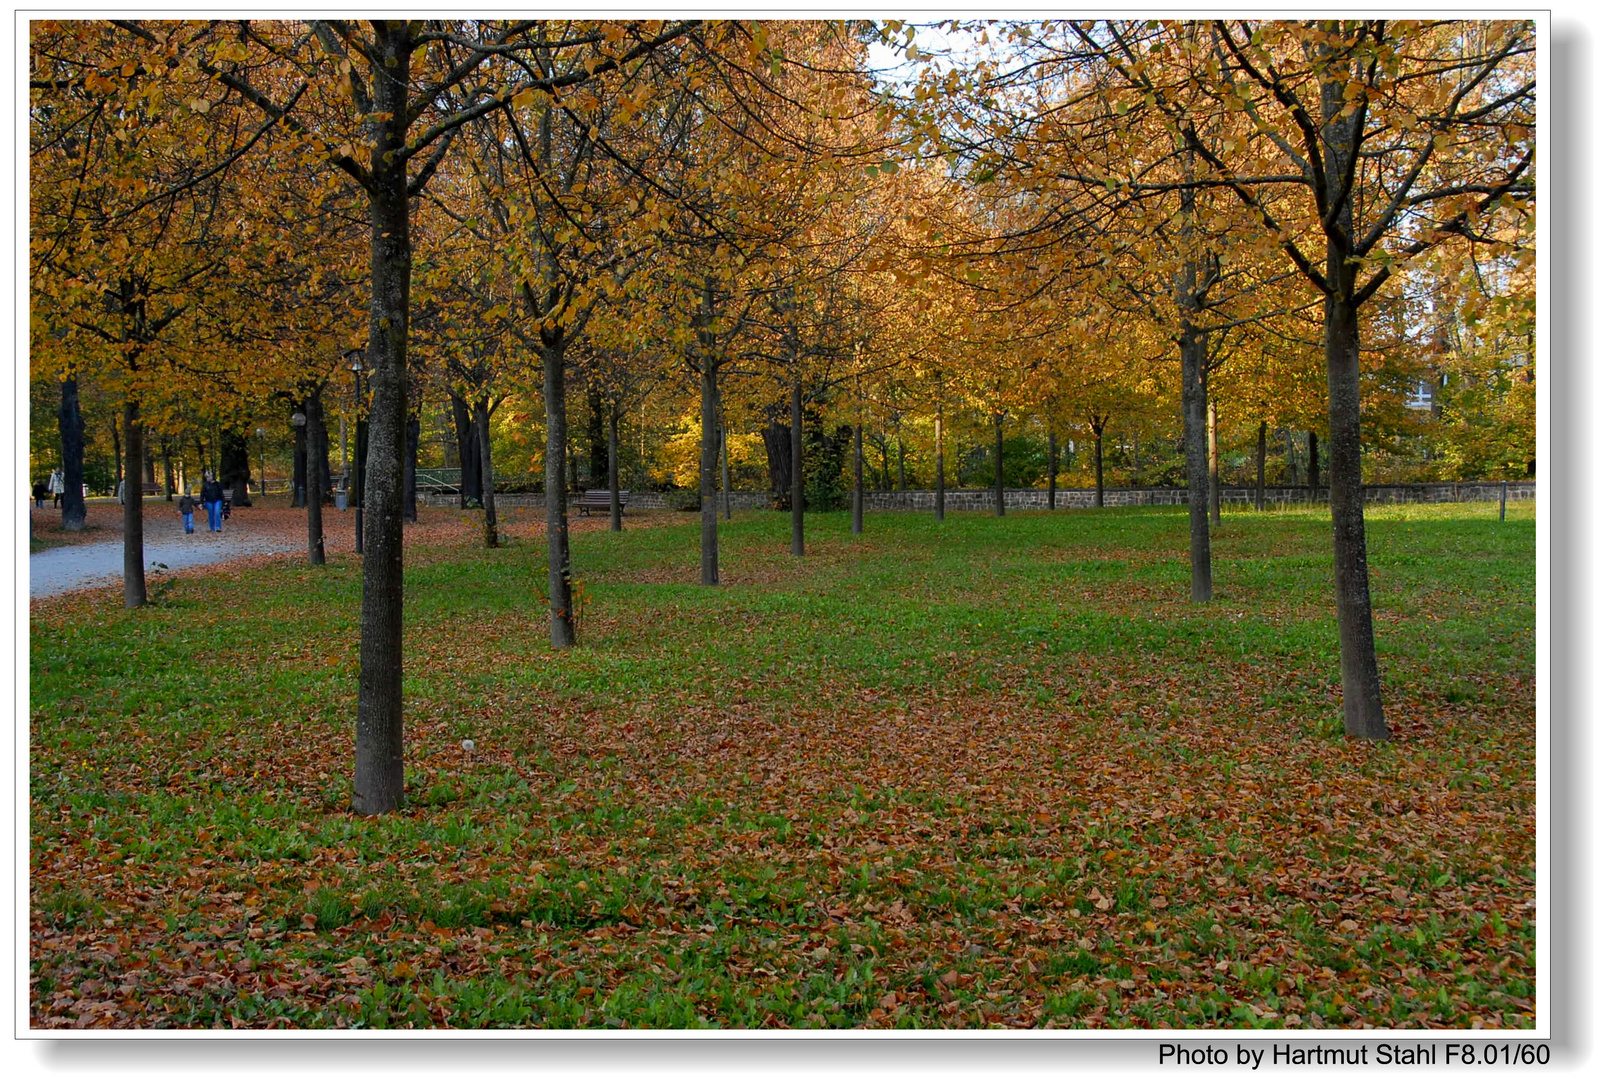 Los colores del otoño, en el parque (Die Farben des Herbstes)